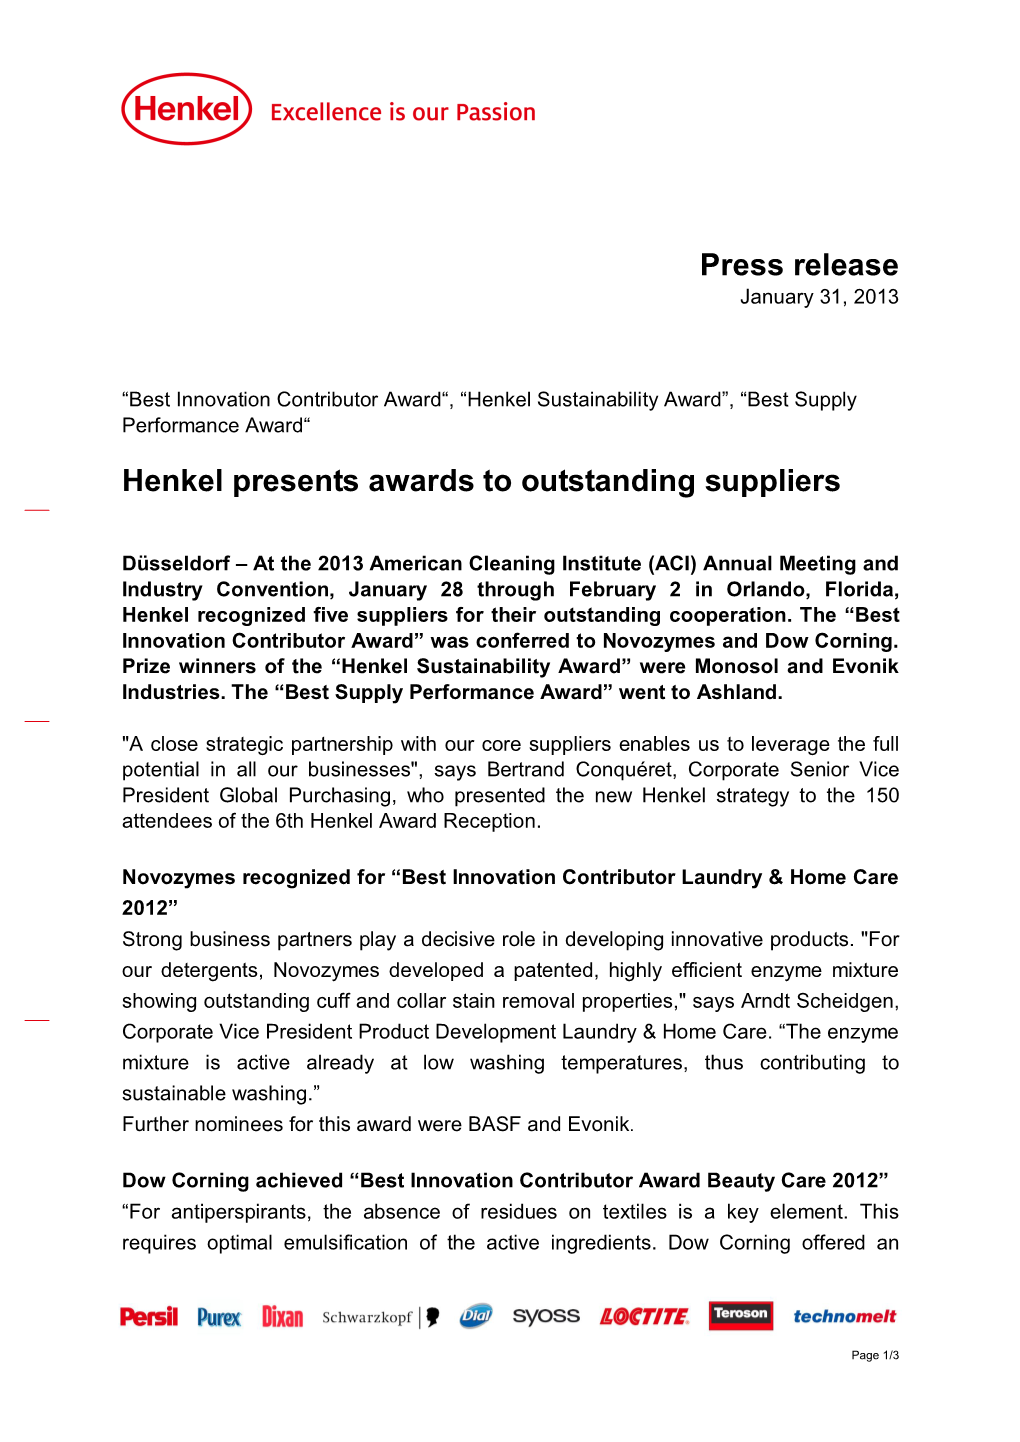 Press Release Henkel Presents Awards to Outstanding Suppliers